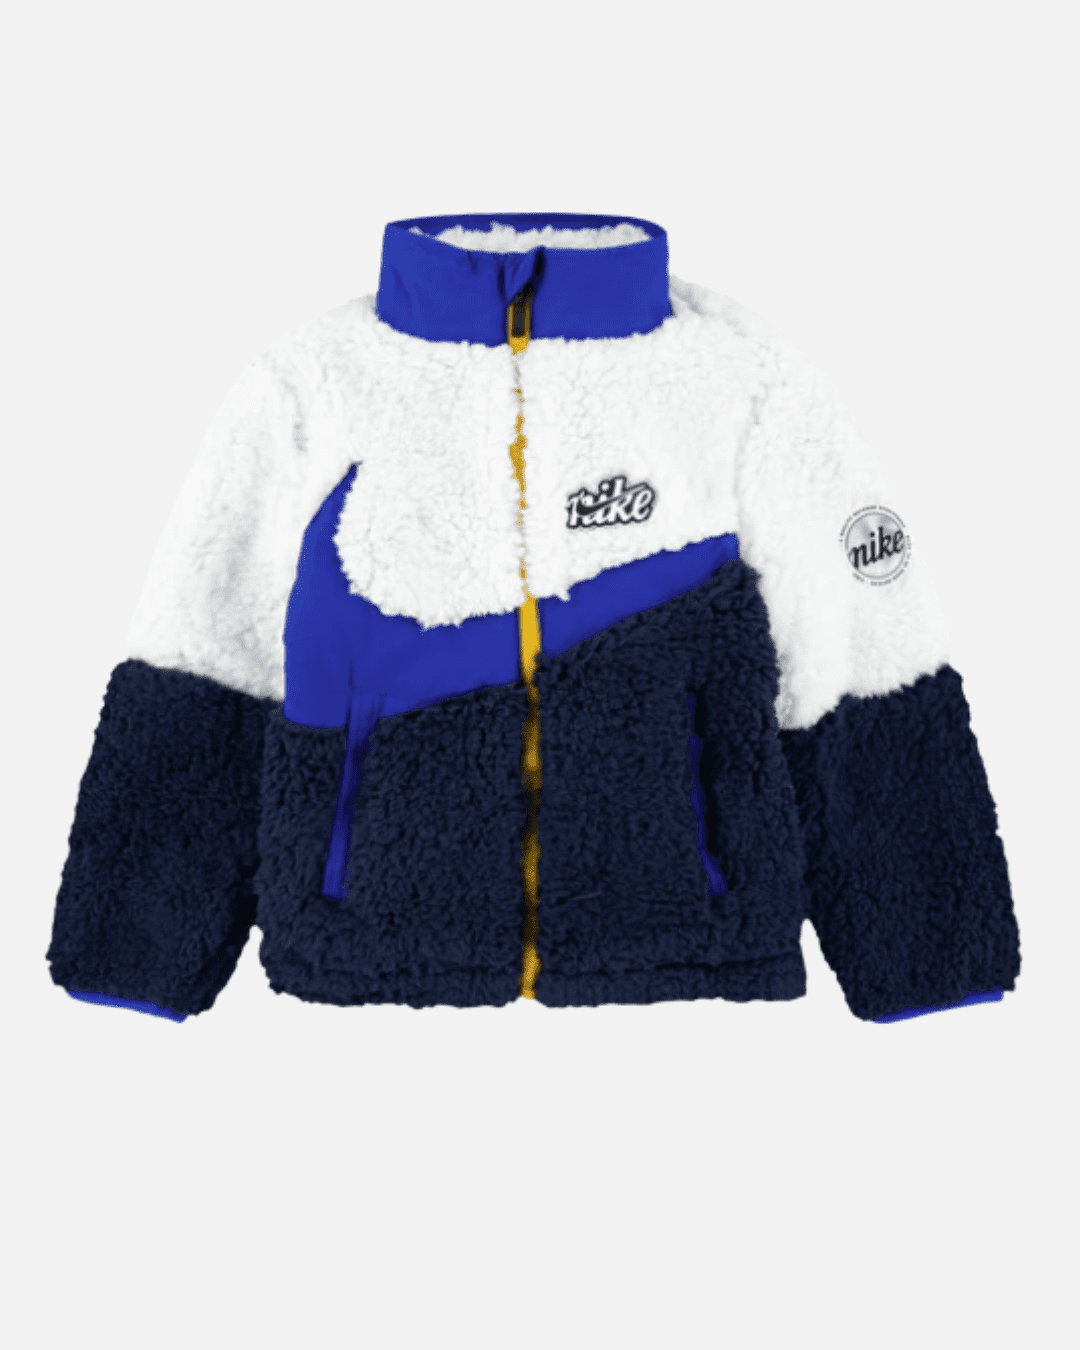 Giacca Nike Sherpa Bambini - Bianco/Blu